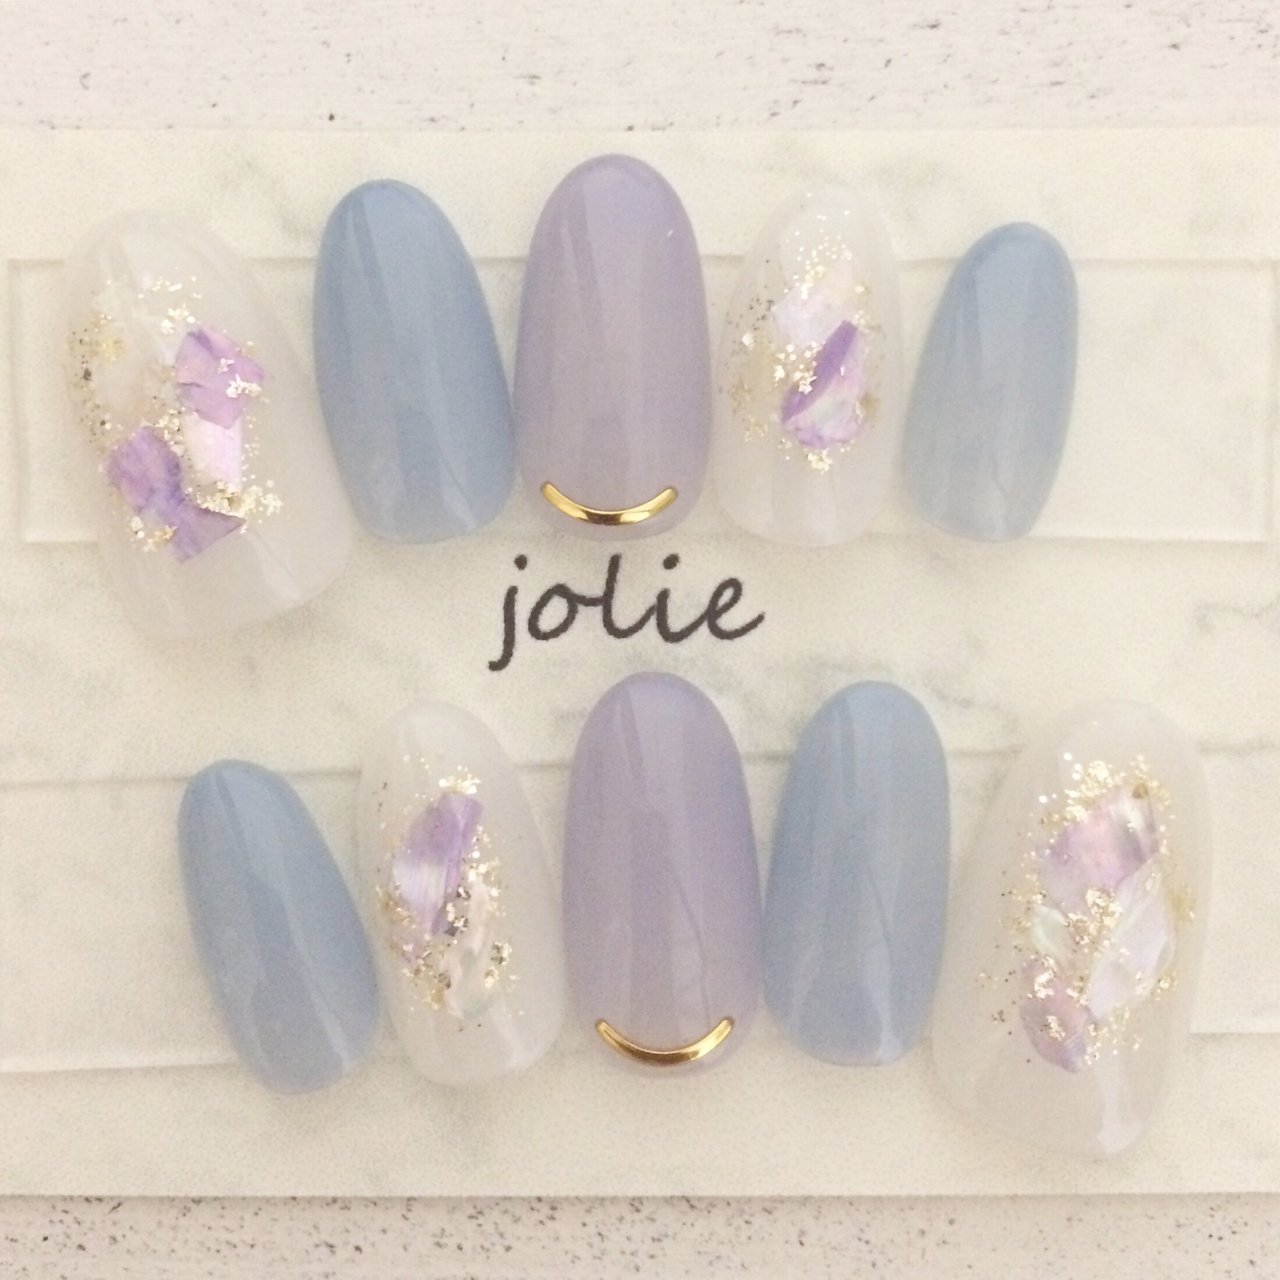 夏 梅雨 浴衣 ブライダル ハンド Jolie Nailsのネイルデザイン No ネイルブック